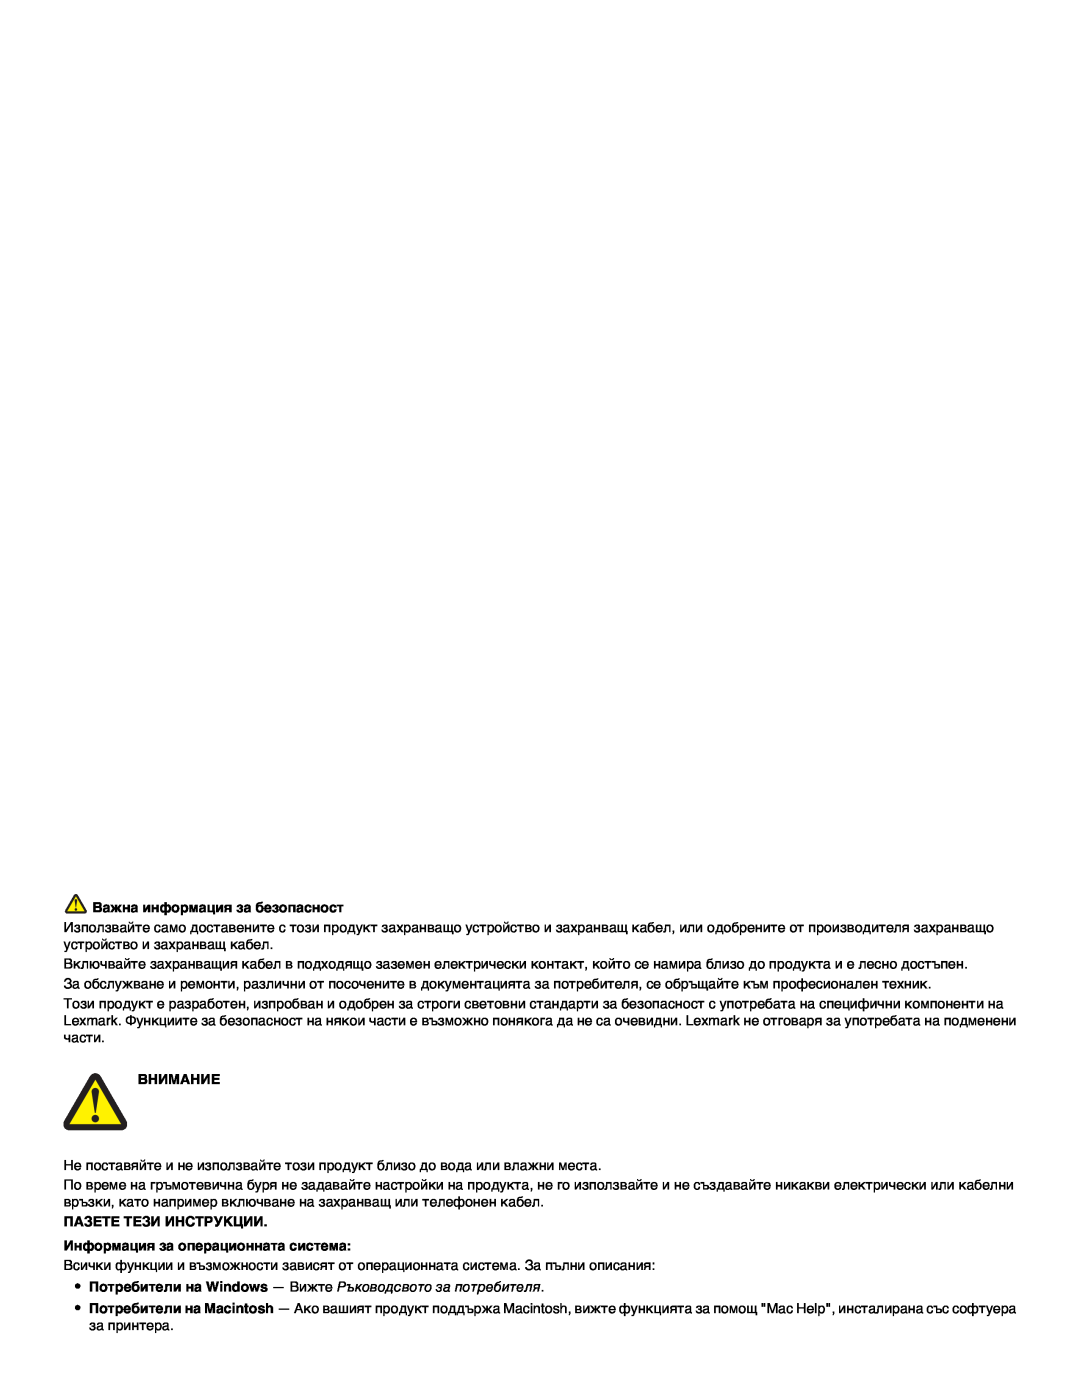 Lexmark 1400 manual Важна информация за безопасност, Внимание, ПАЗЕТЕ ТЕЗИ ИНСТРУКЦИИ Информация за операционната система 